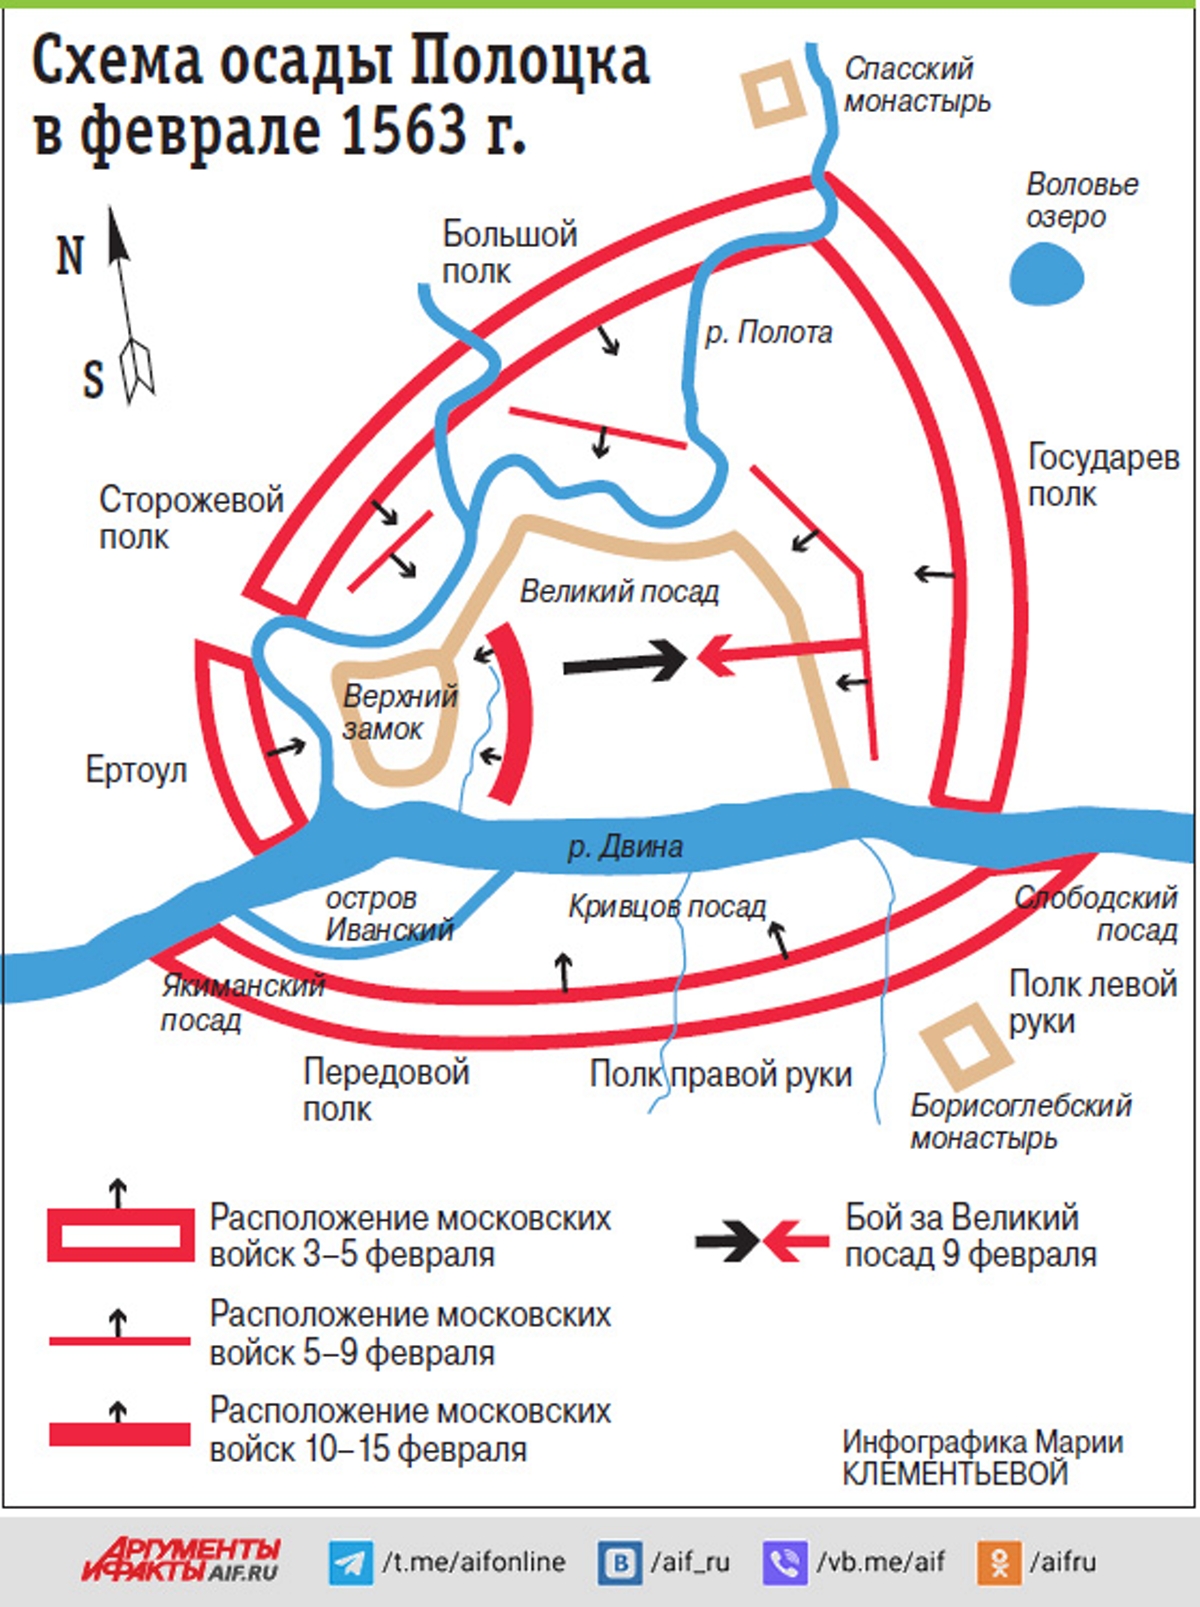 Карта осады Полоцка с указанием направлений главных ударов русских войск